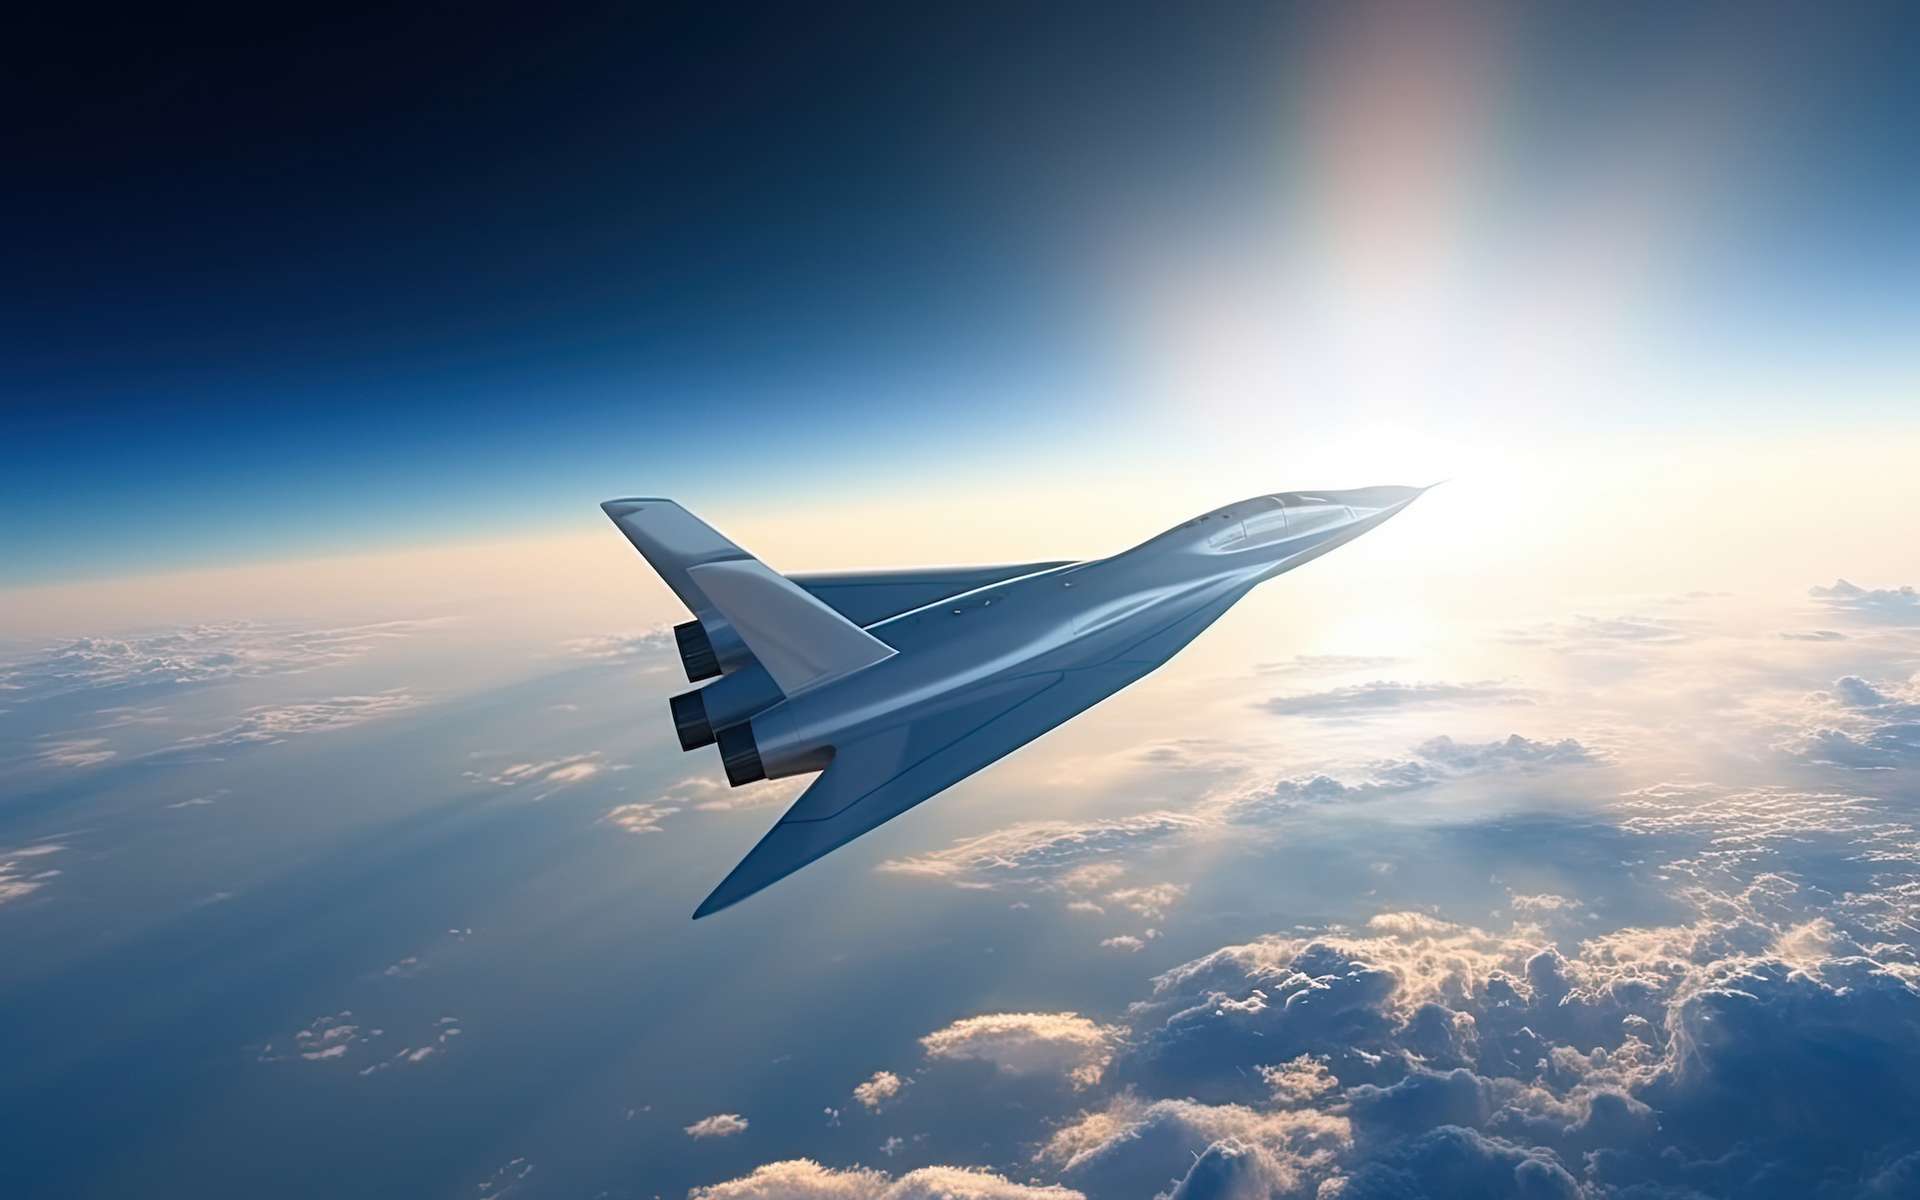 Projet Stargazer : premier vol d'un drone supersonique doté d'un moteur à détonation révolutionnaire